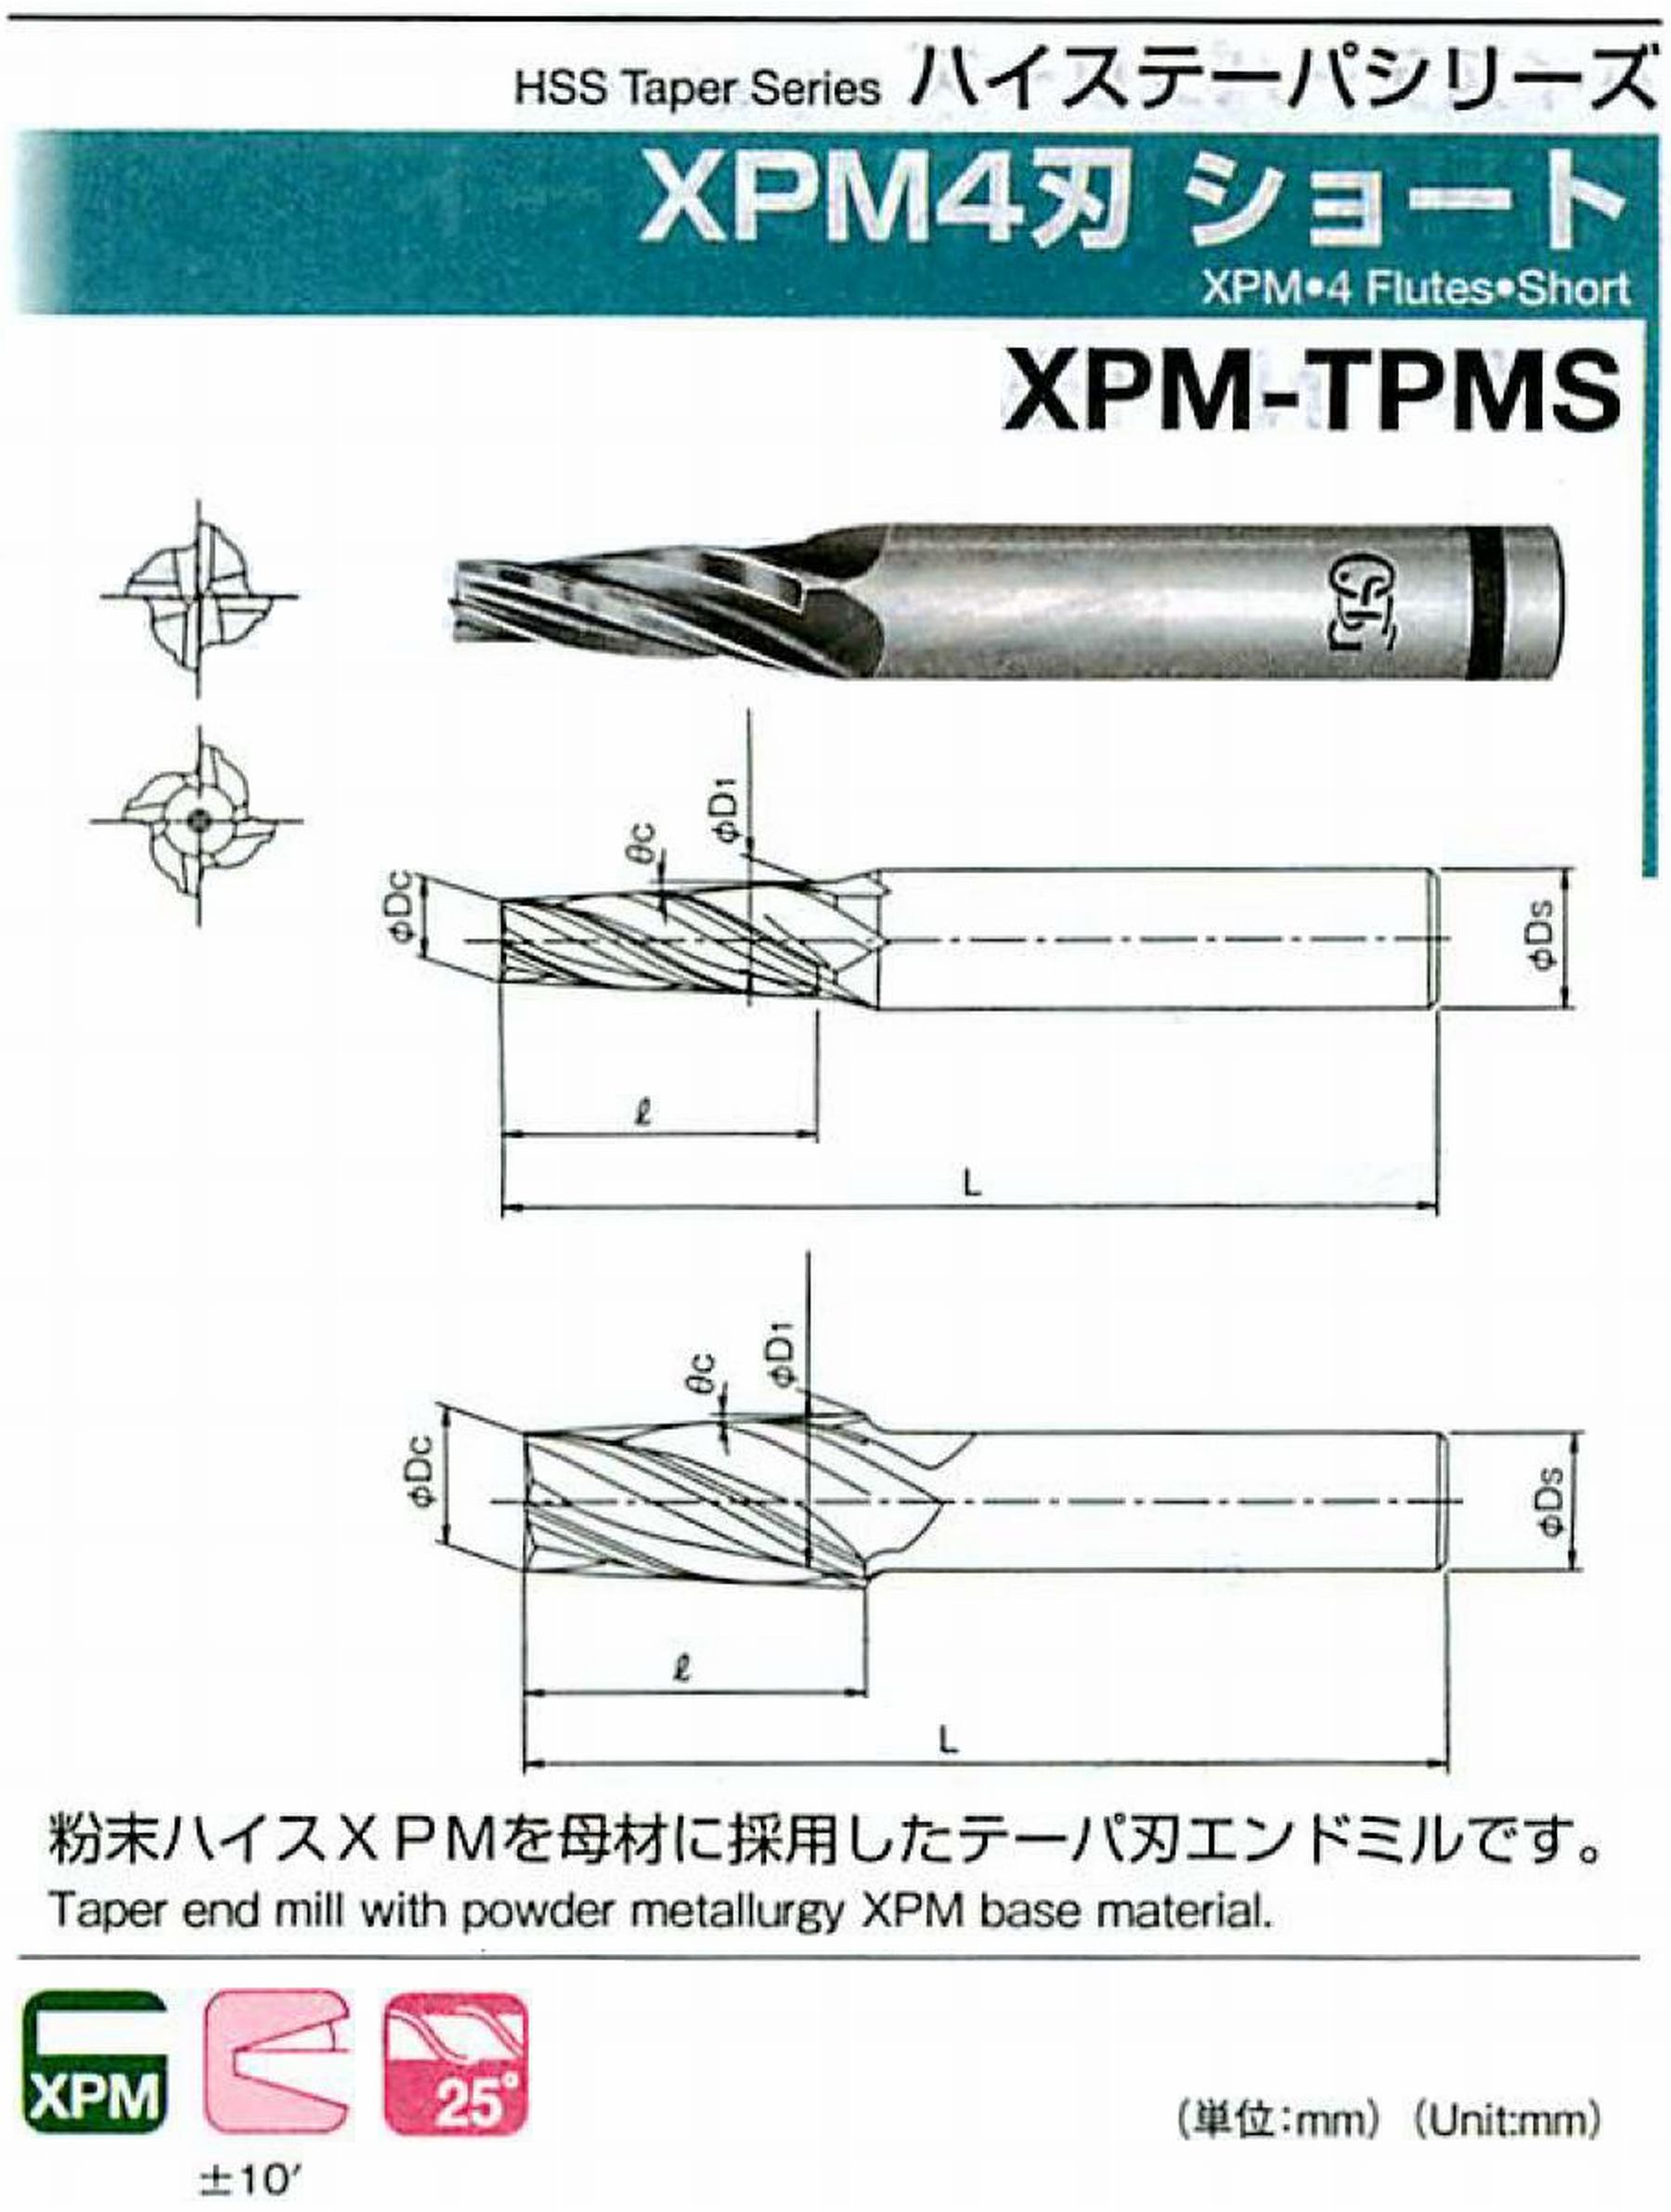 オーエスジー/OSG XPM4刃 ショート XPM-TPMS 外径×刃部テーパ半角2.5×2.5°全長62 刃長18 シャンク径6mm 大端径4.07